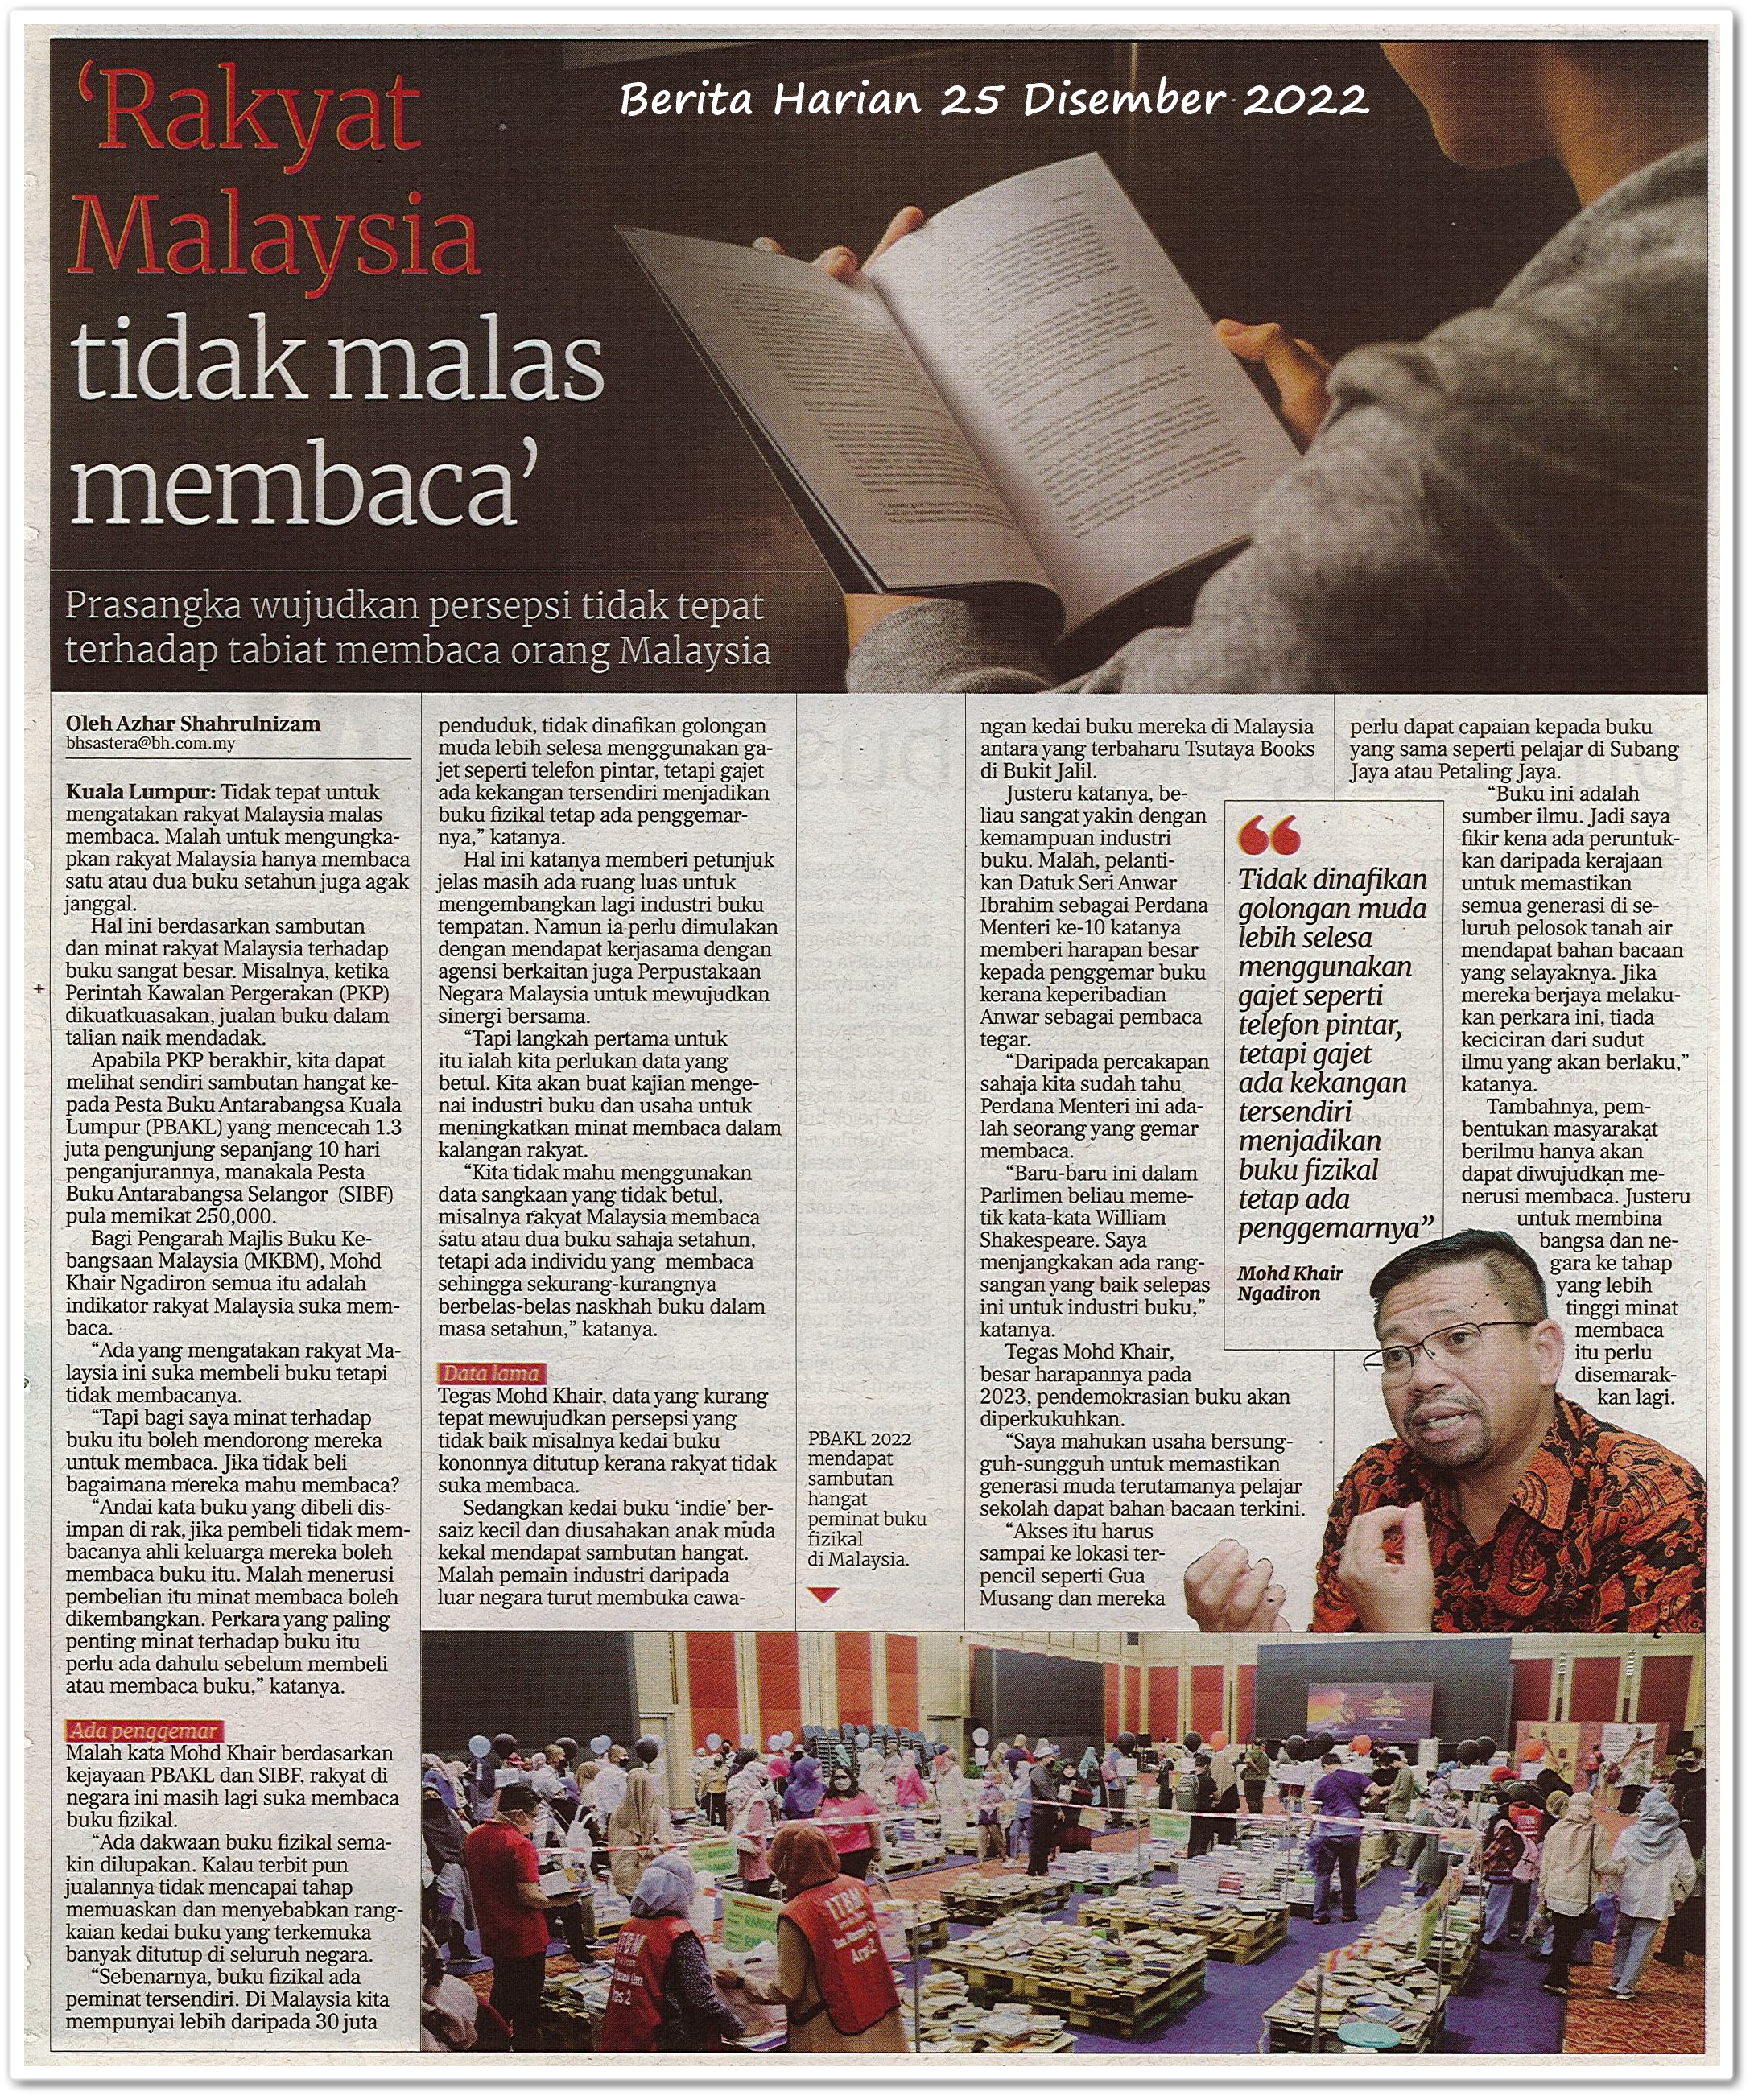 Rakyat Malaysia tidak malas membaca ; Prasangka wujudkan persepsi tidak tepat terhadap tabiat membaca orang Malaysia